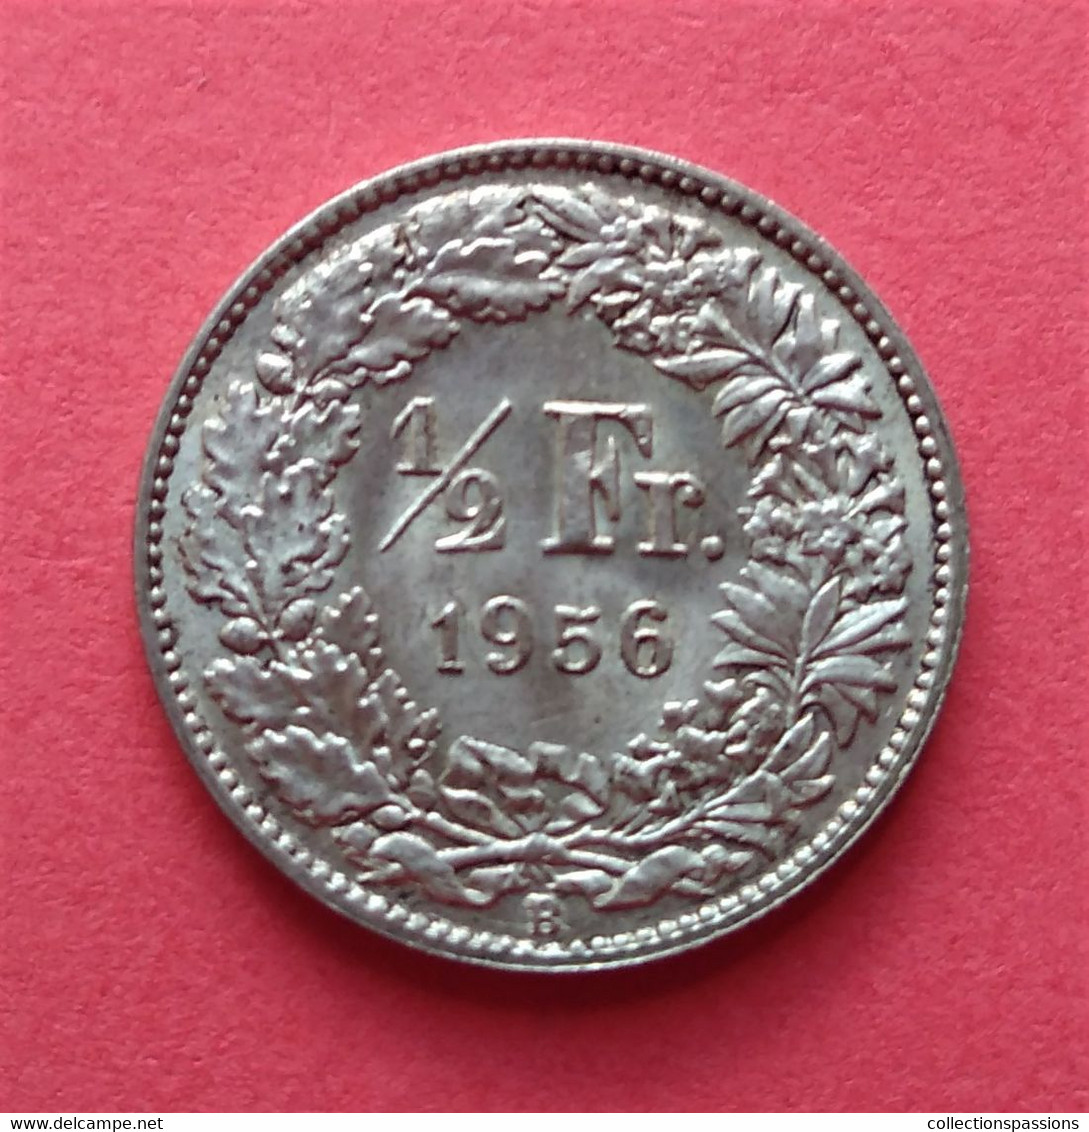 - SUISSE - 1/2 Franc - 1956 - Argent - 1/2 Franken